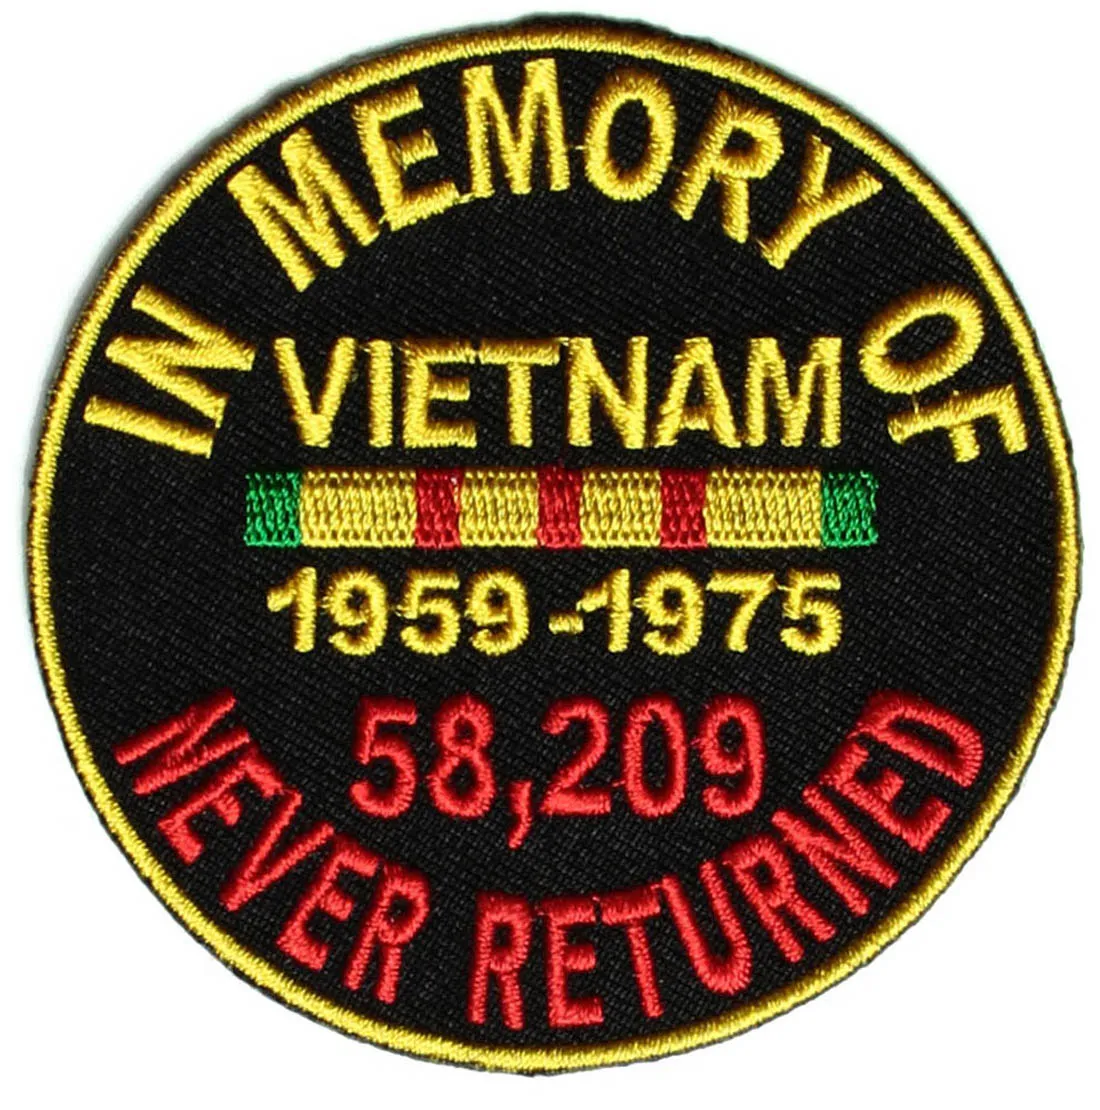 Il prezzo basso con la patch rotonda in memoria di Vietnam può personalizzare qualsiasi logo che ti serve il supporto di ferro